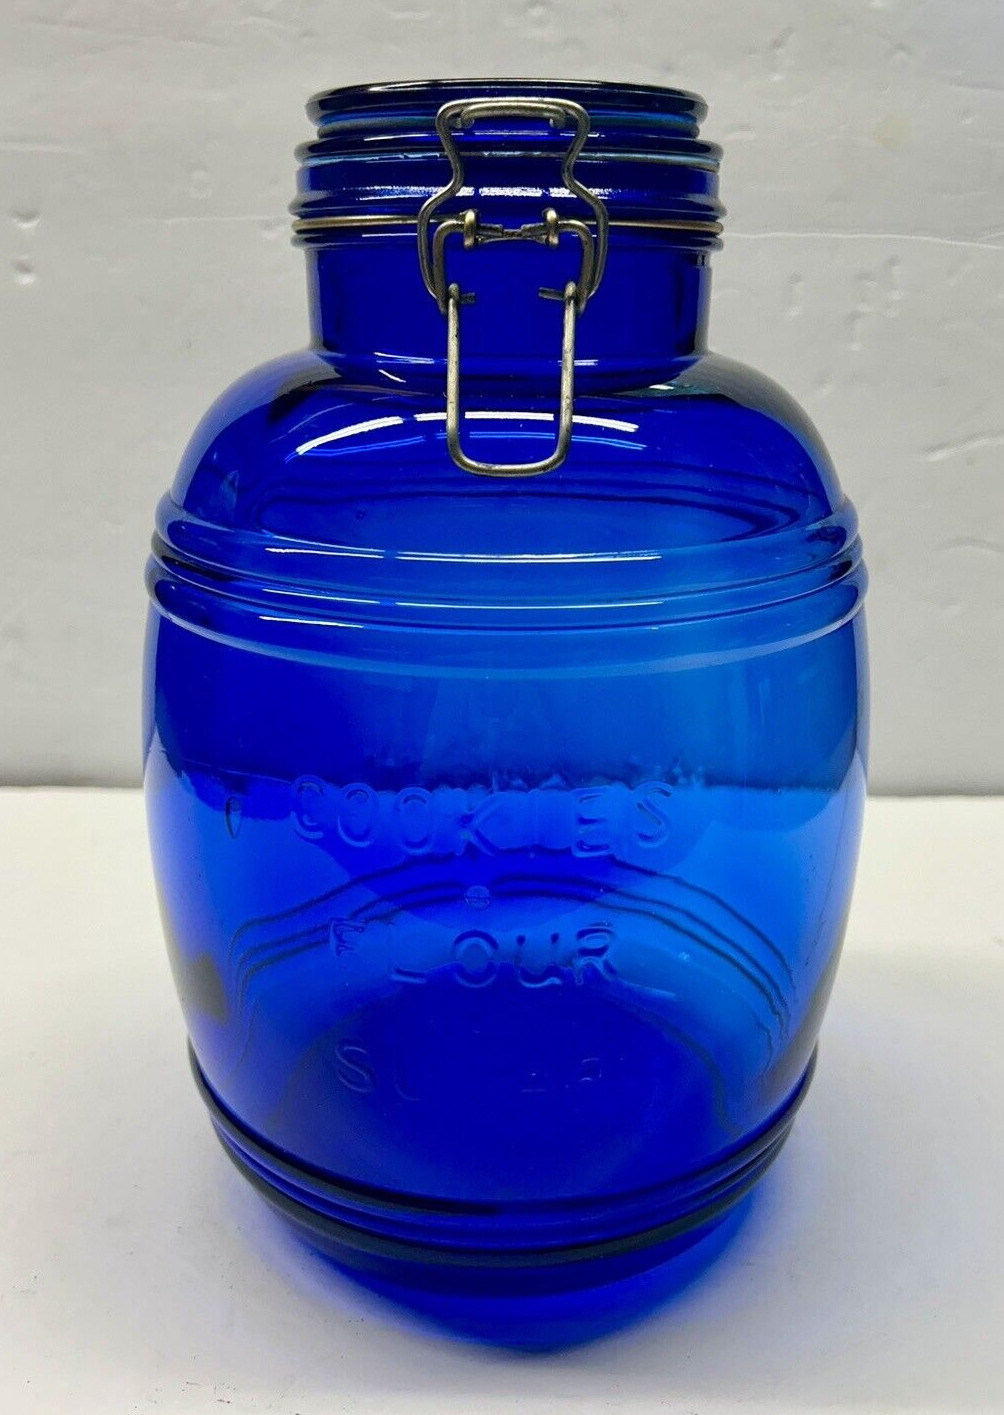 Vintage Cobalt Blue Cracker Barrel Shaped Glass Canister 3 Quart